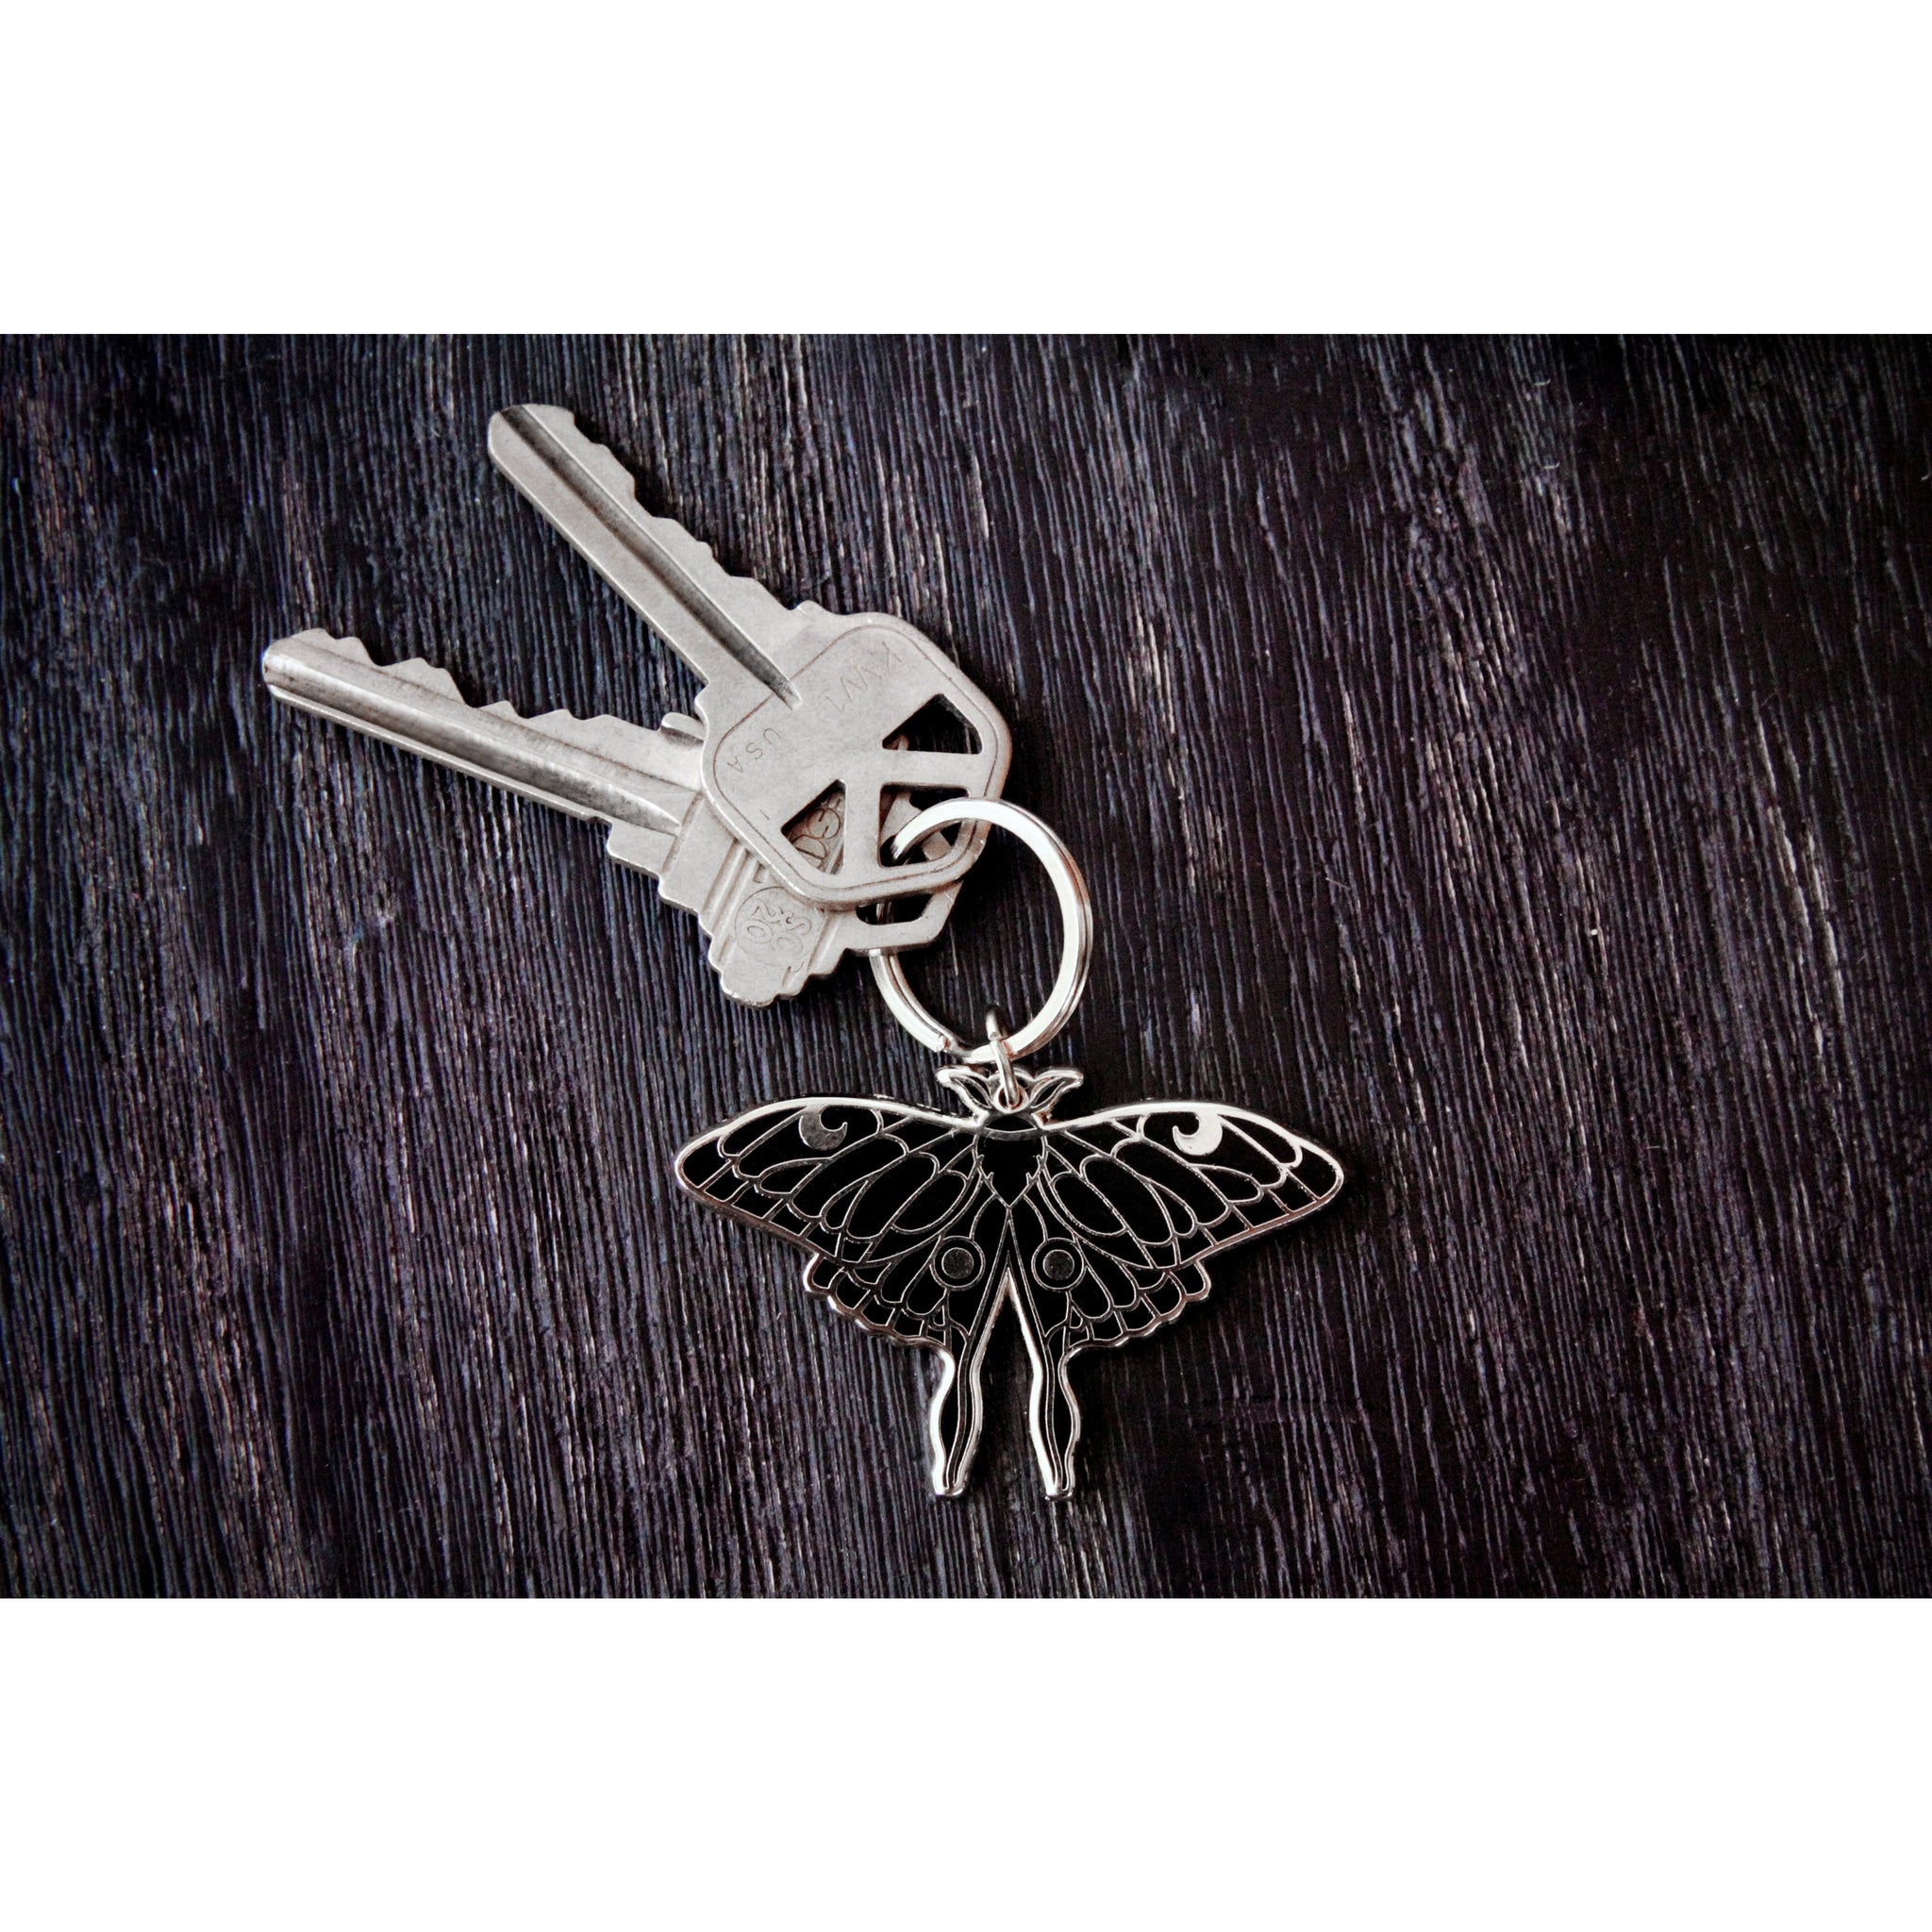 Luna Moth Keychain (Silver)